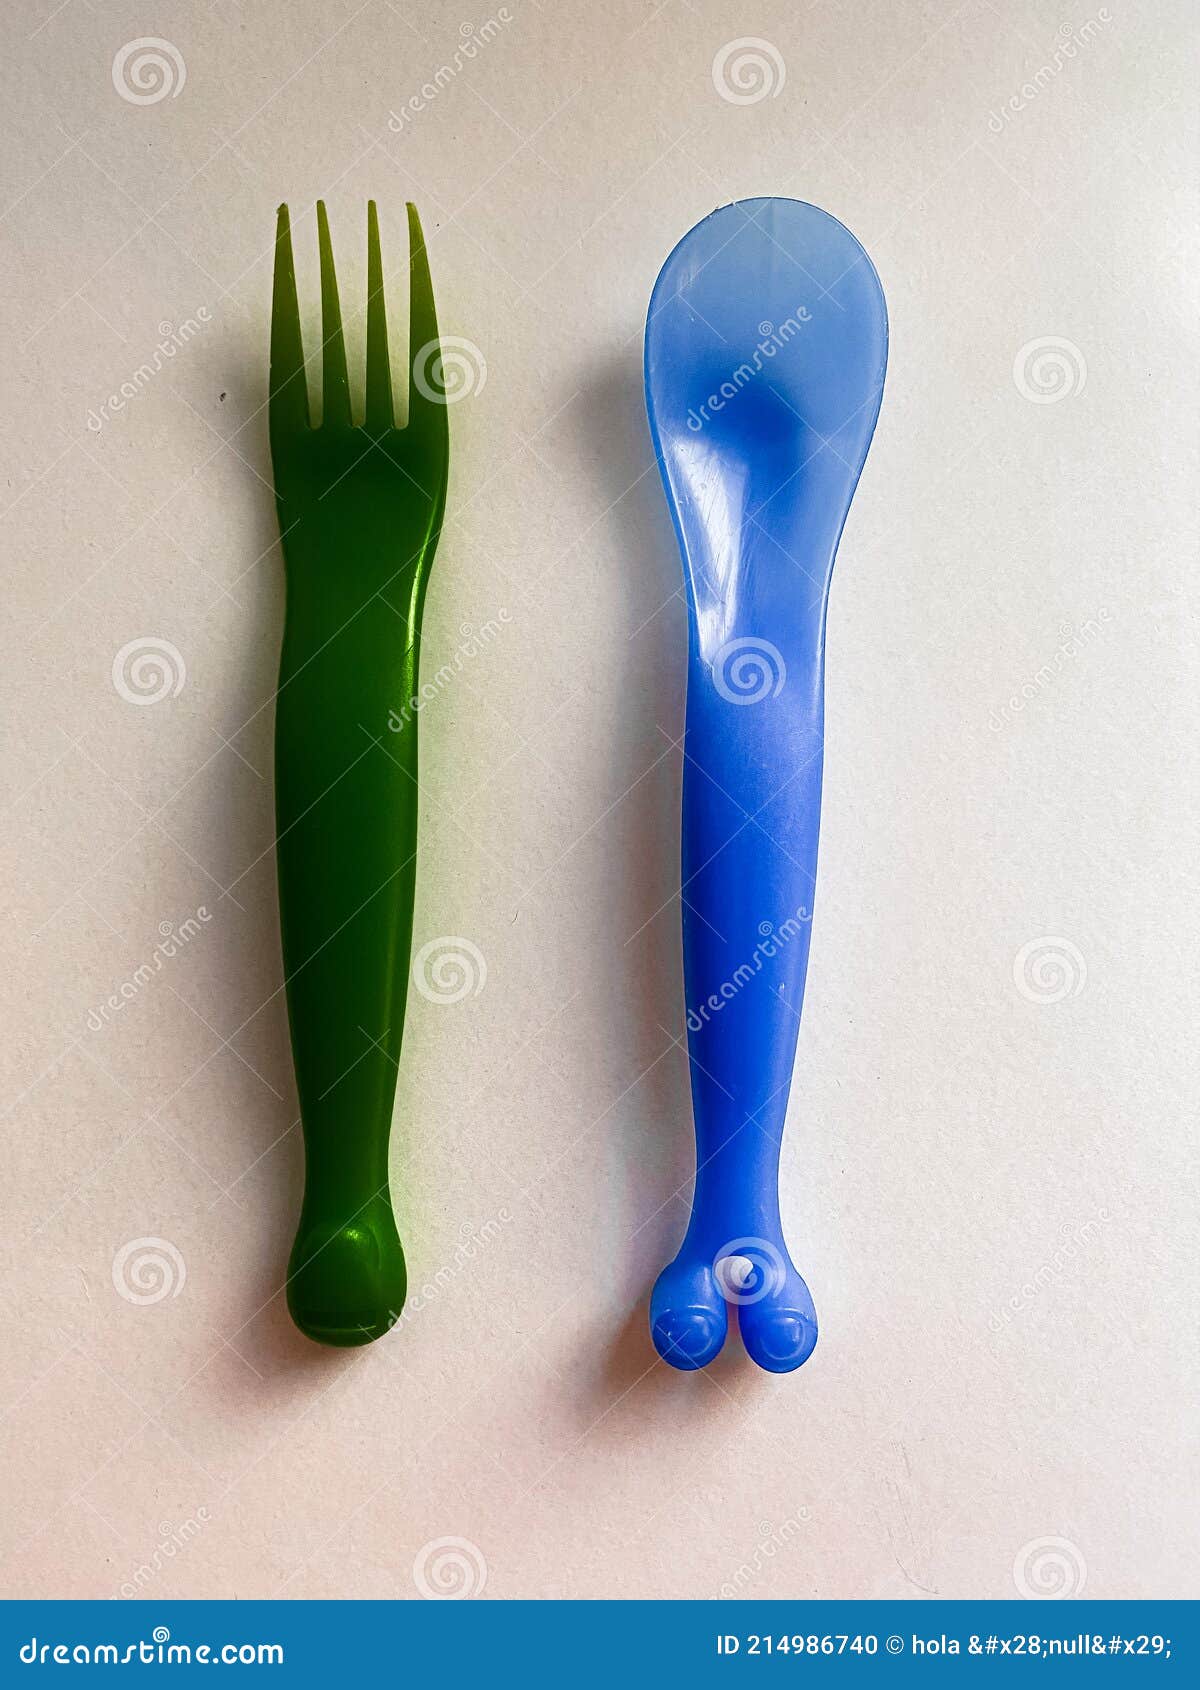 kids plastic cutlery spoon  knife cubiertos de plÃÂ¡stico para niÃÂ±os tenedor cuchillo